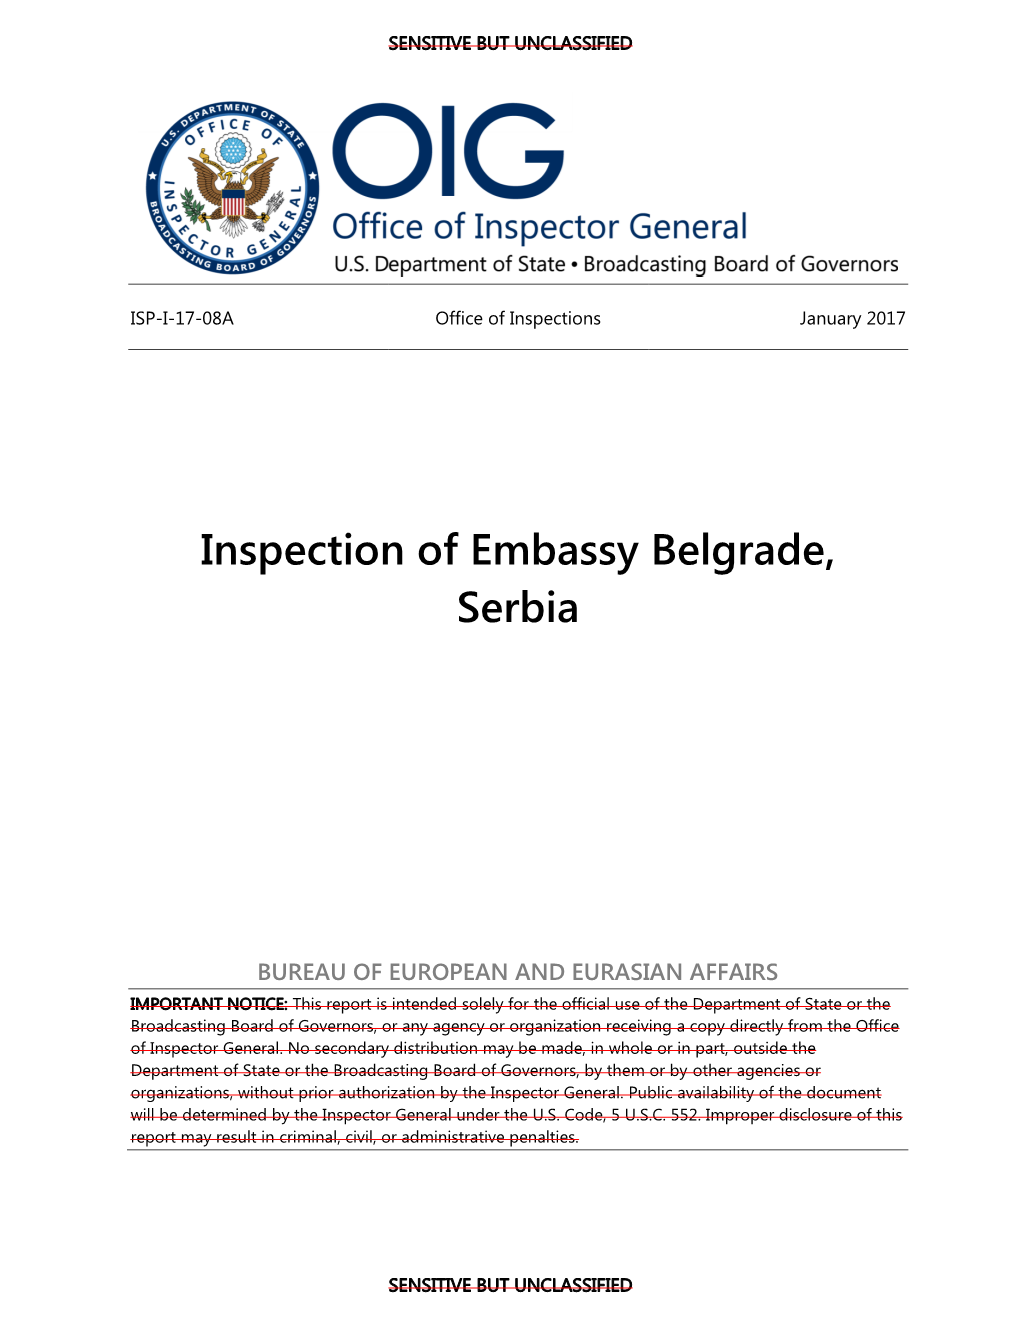 Inspection of Embassy Belgrade, Serbia